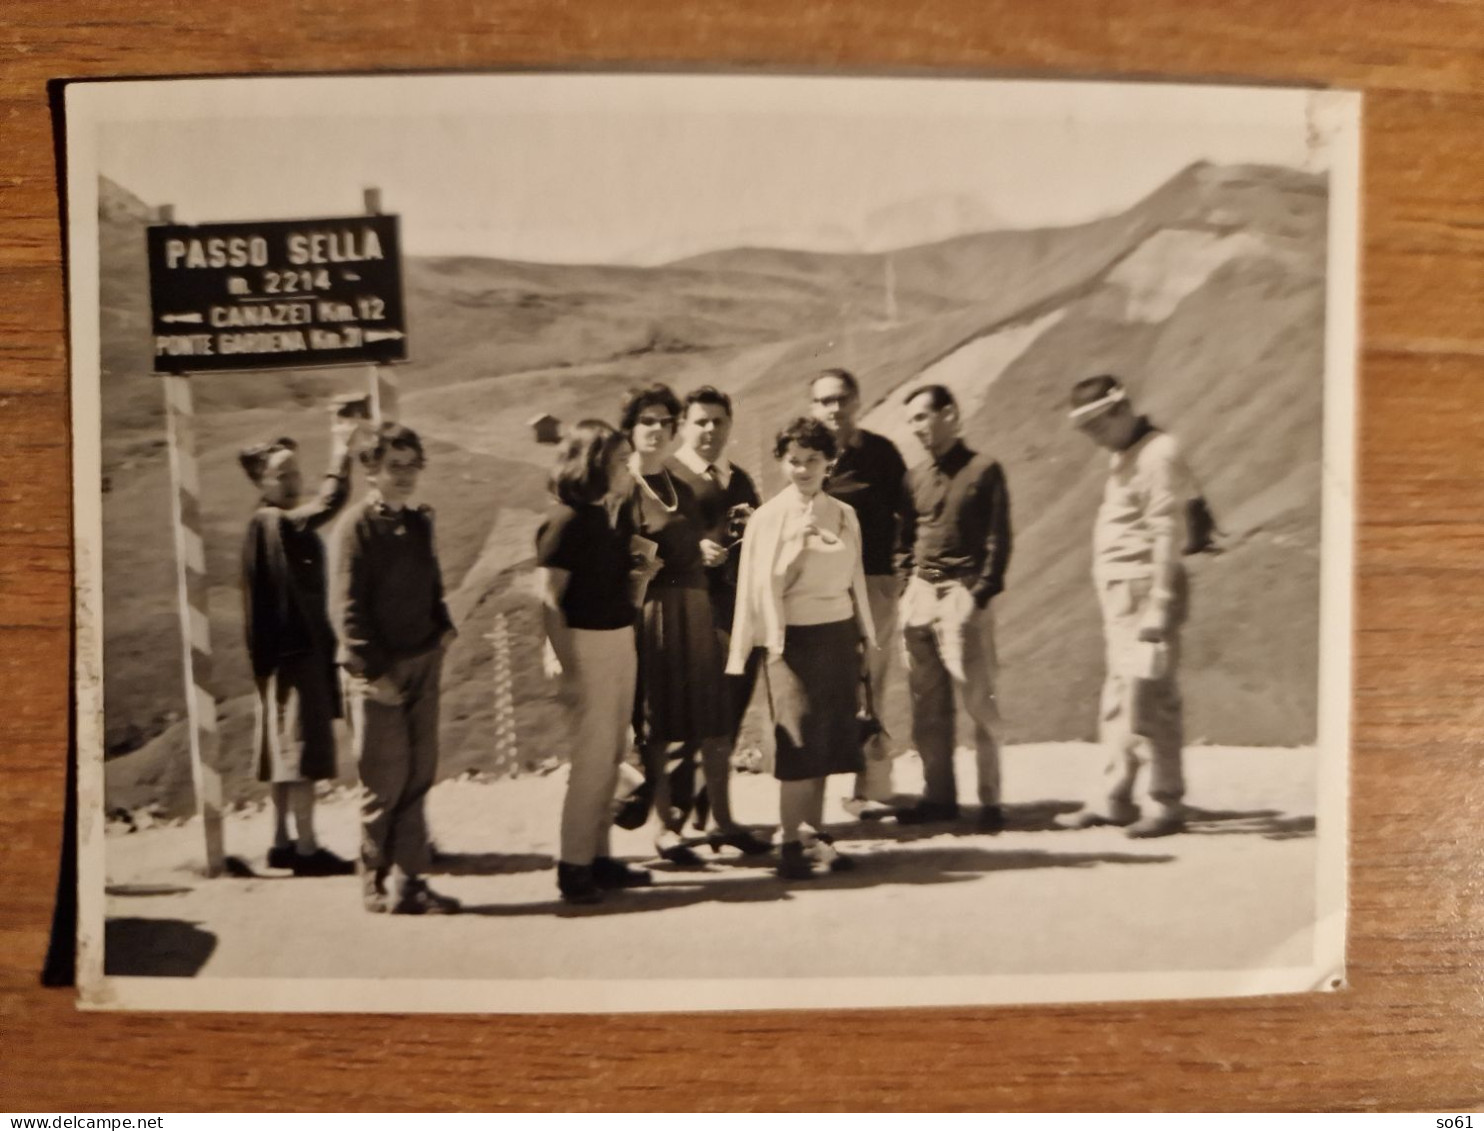 19302. Fotografia D'epoca Passo Sella 1961 - 10,5x7,5 - Orte